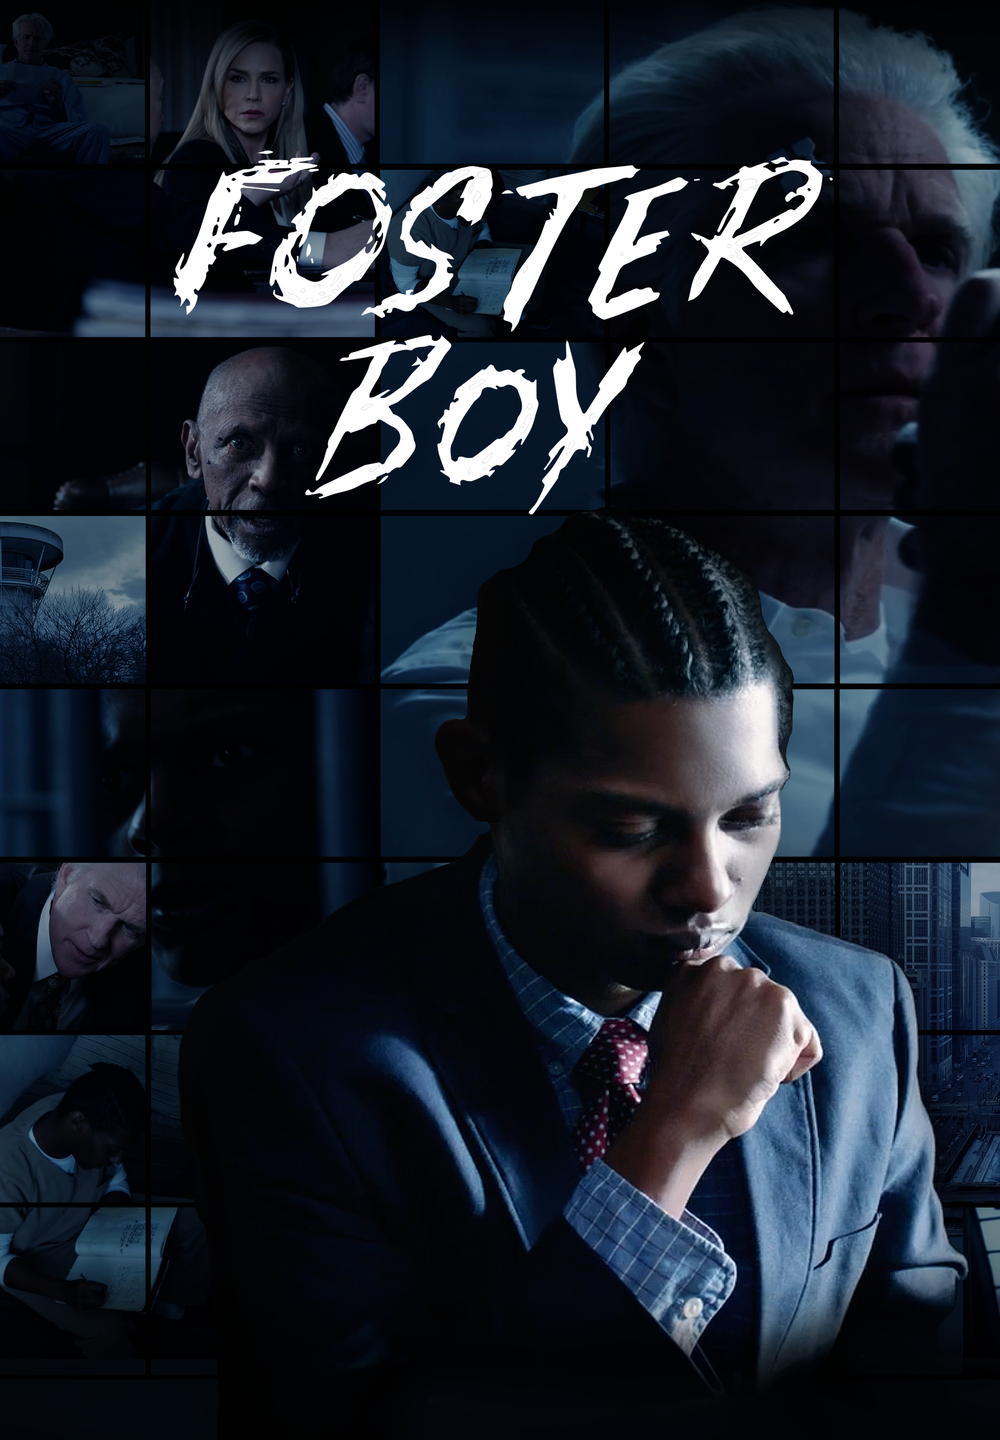 Foster Boy [HD] (2019)